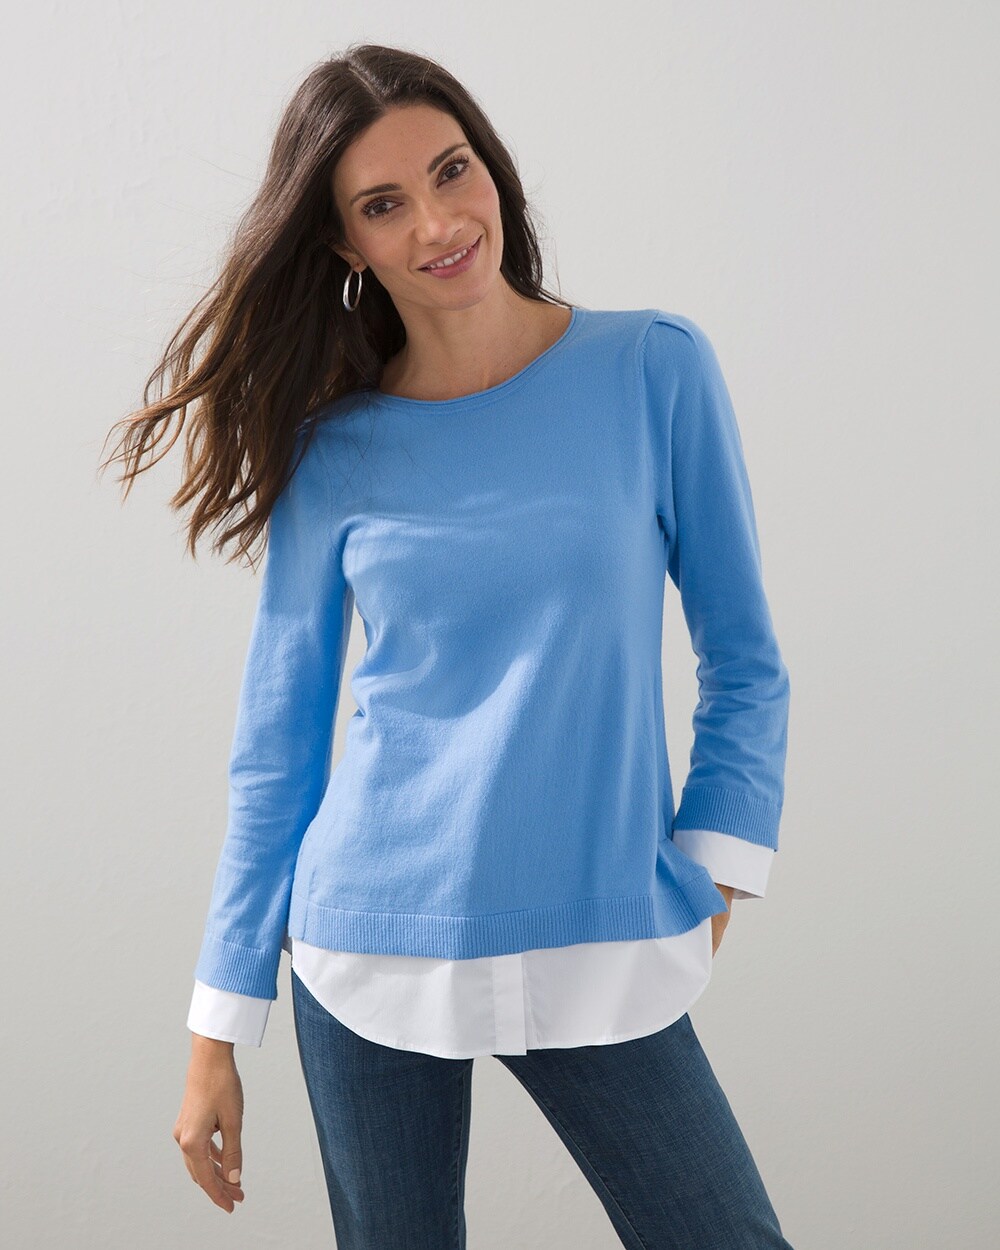 Woven Shirt Detail Knit Sweater